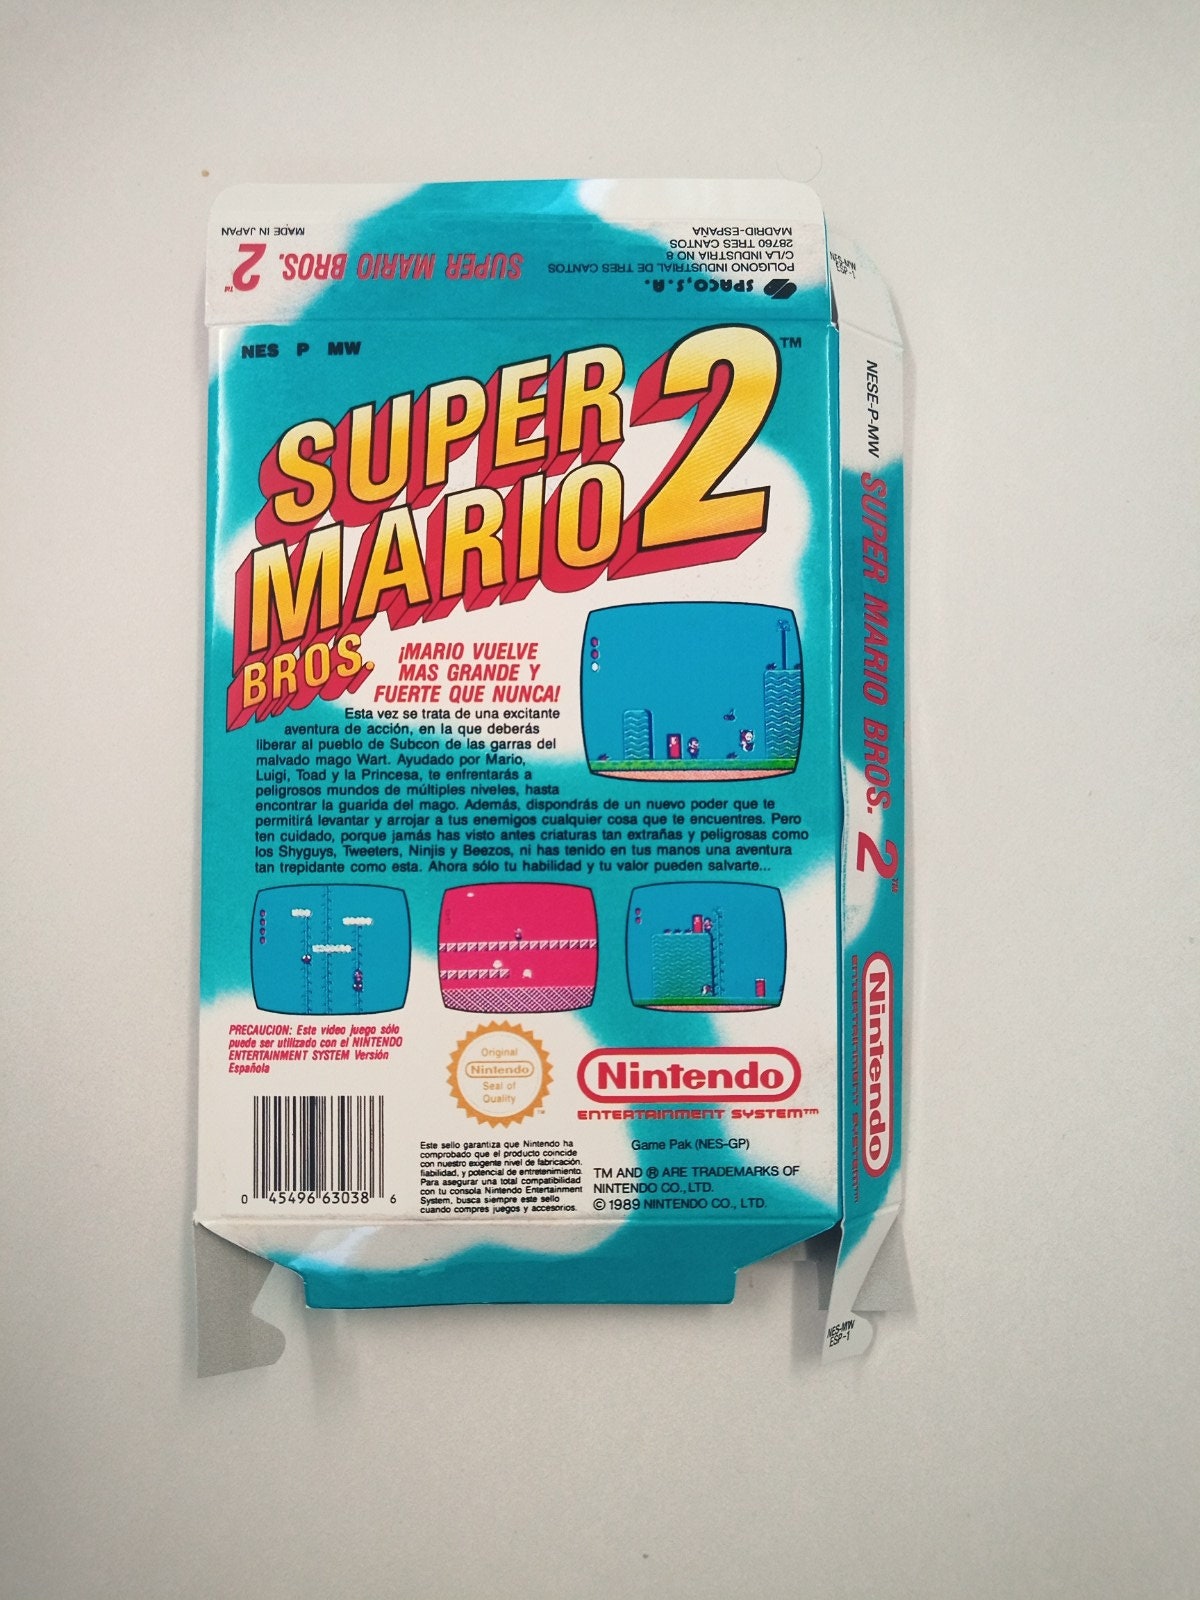 Super Mario Bros 2, Juegos de Mario Bros 2